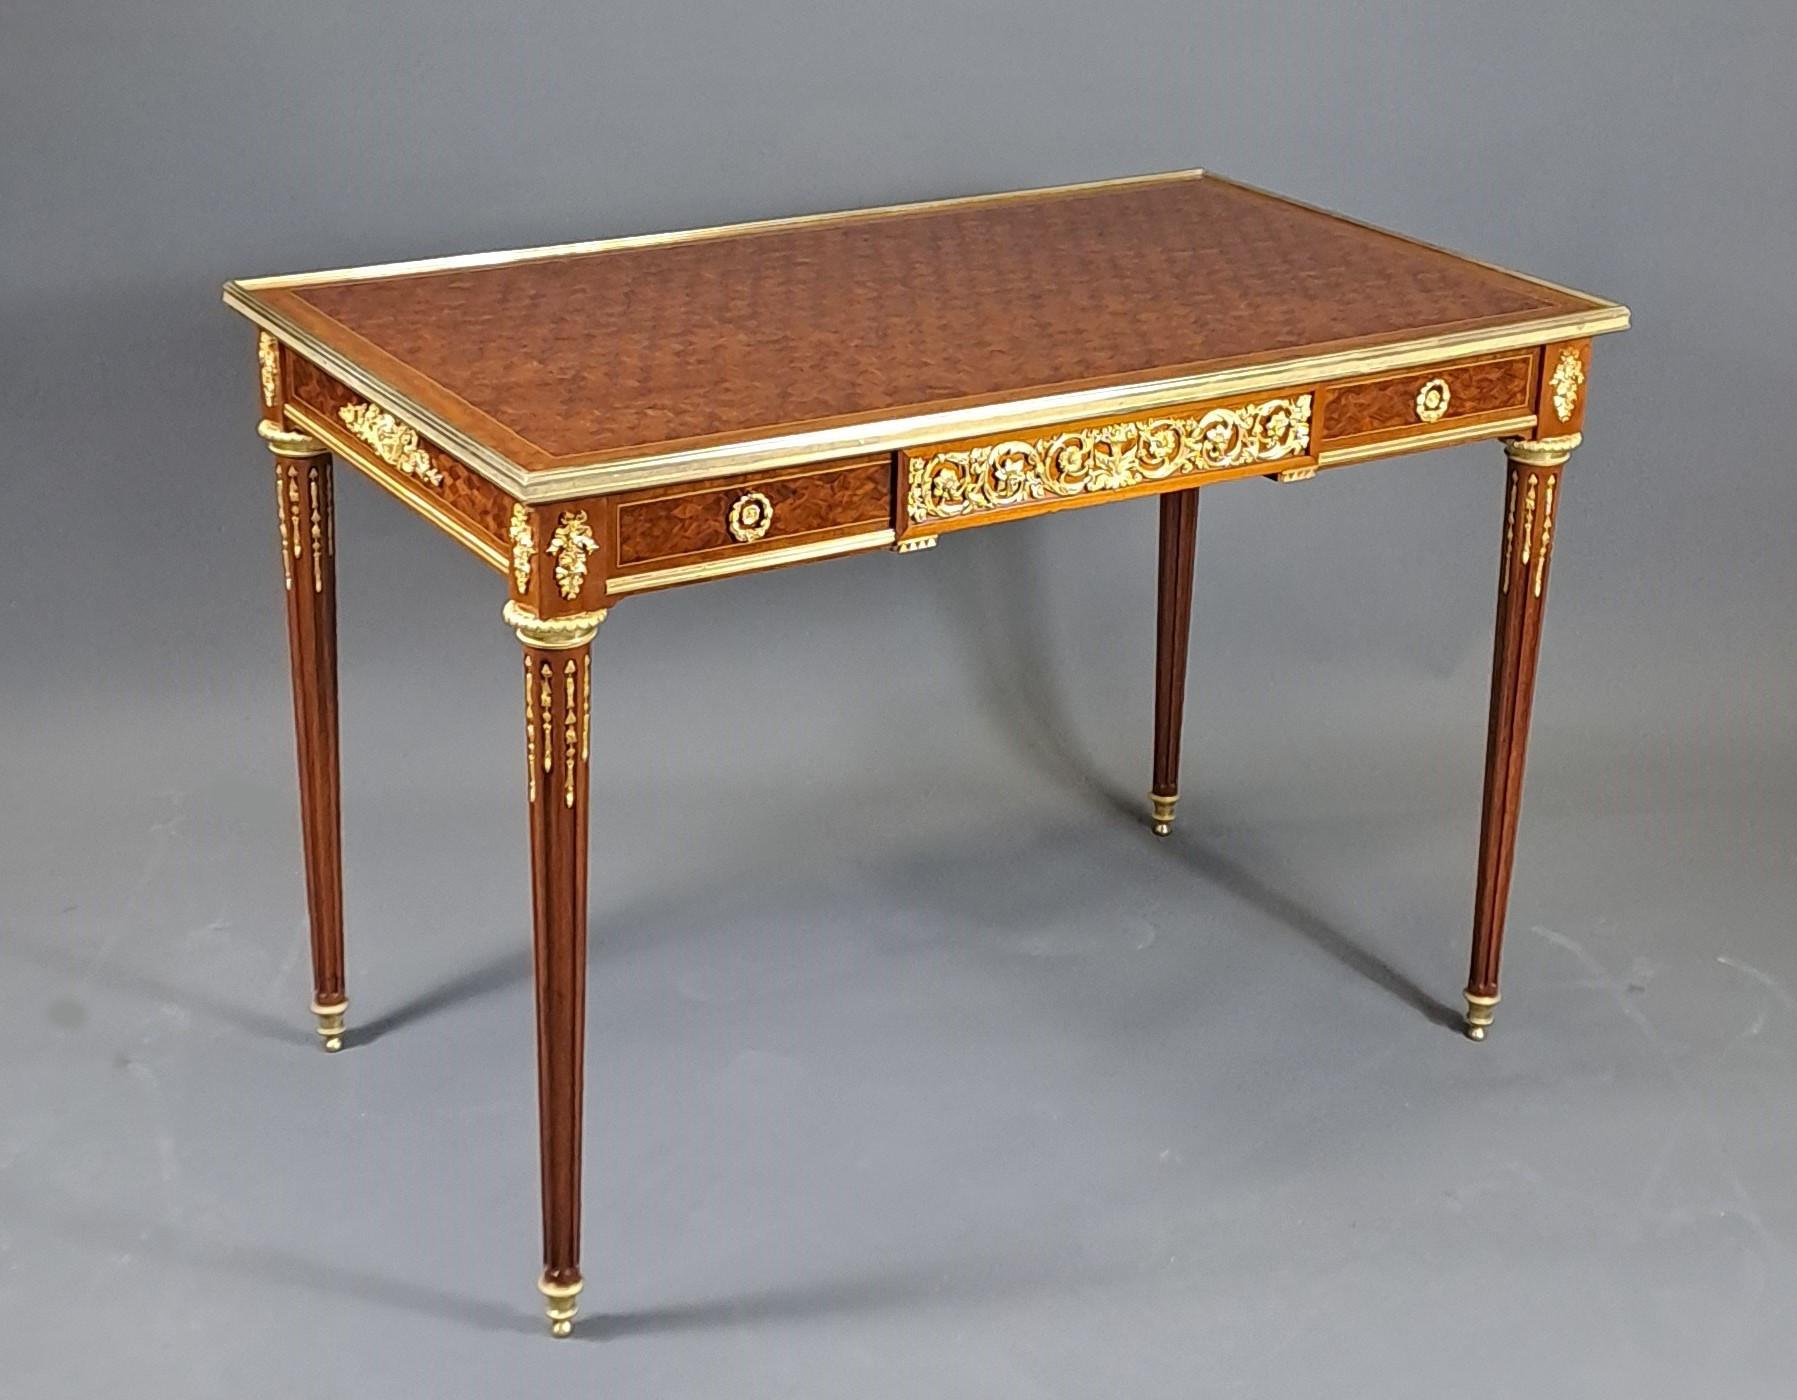 Magnifique table centrale de style Louis XVI en acajou et marqueterie de bois de rose.

Superbe ornementation de bronze doré très finement ciselé.

Ouverture d'un grand tiroir.

Travail parisien de la seconde moitié du 19ème siècle, d'une qualité